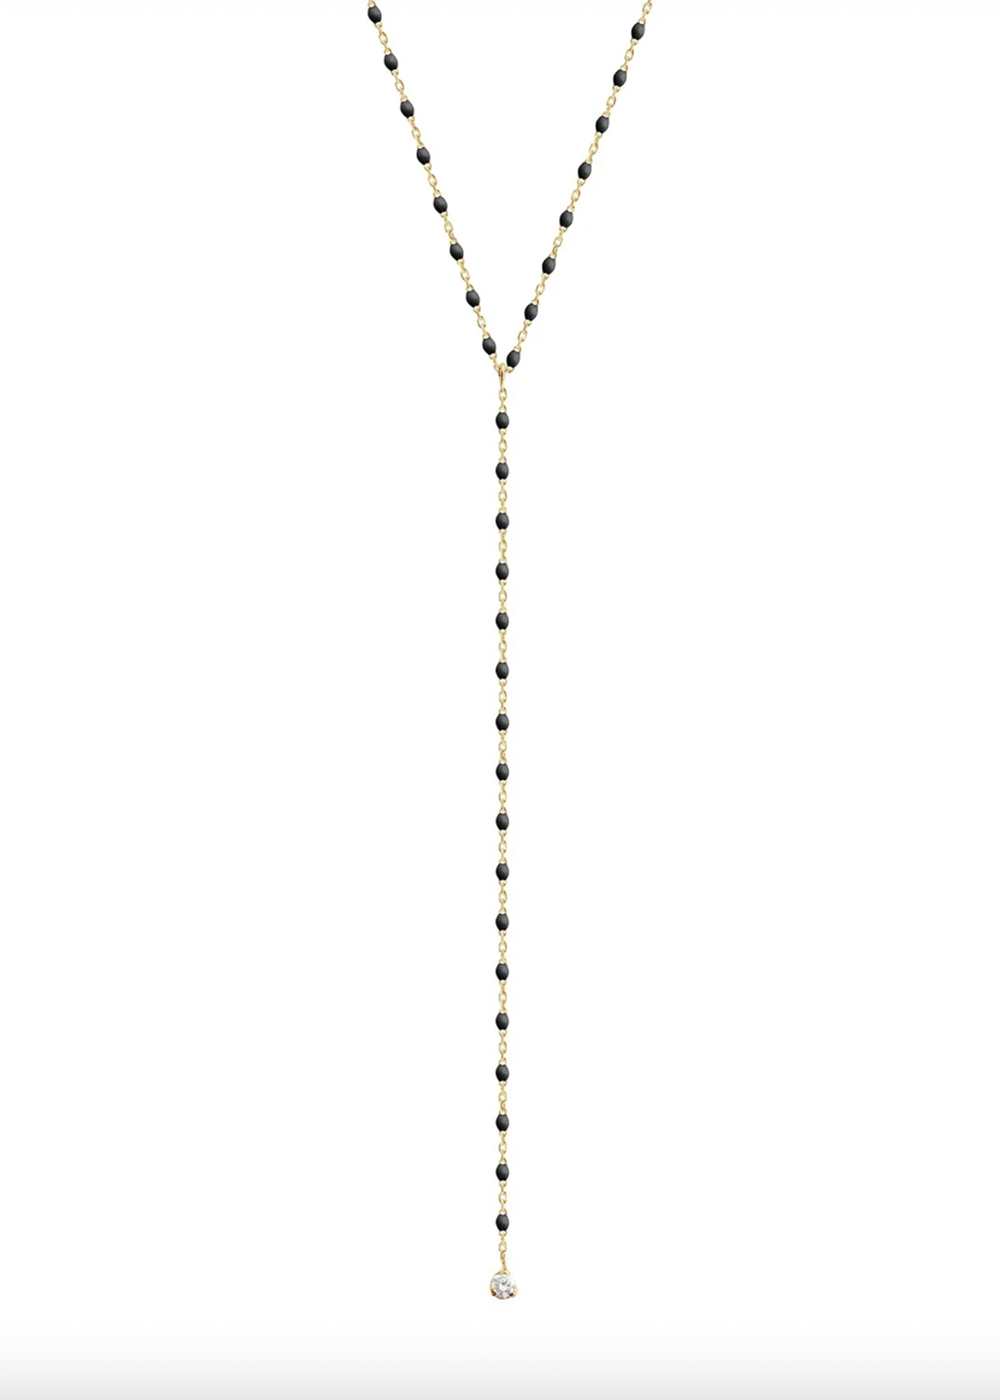 gigiClozeau Party necklace with Diamond |Black|